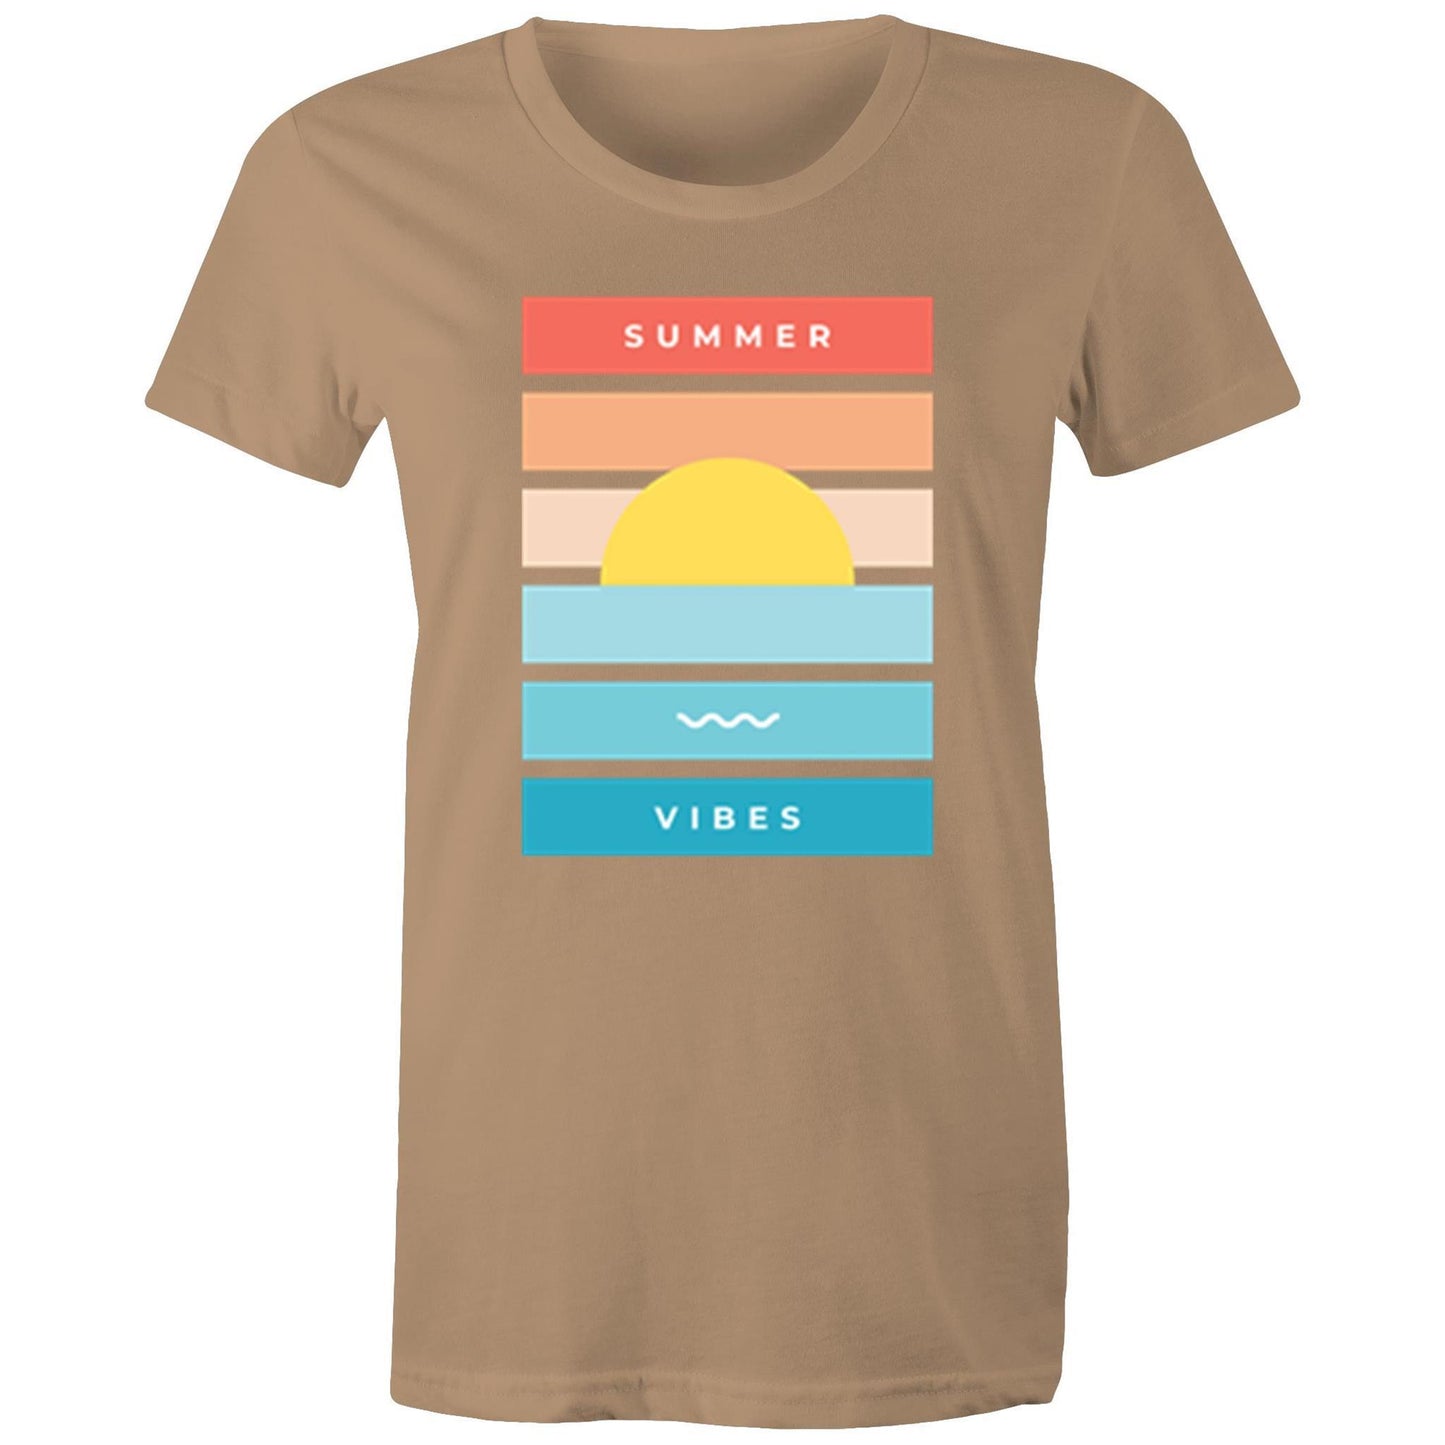 Summer Vibes - Women's T-shirt Tan Womens T-shirt Retro Summer Womens